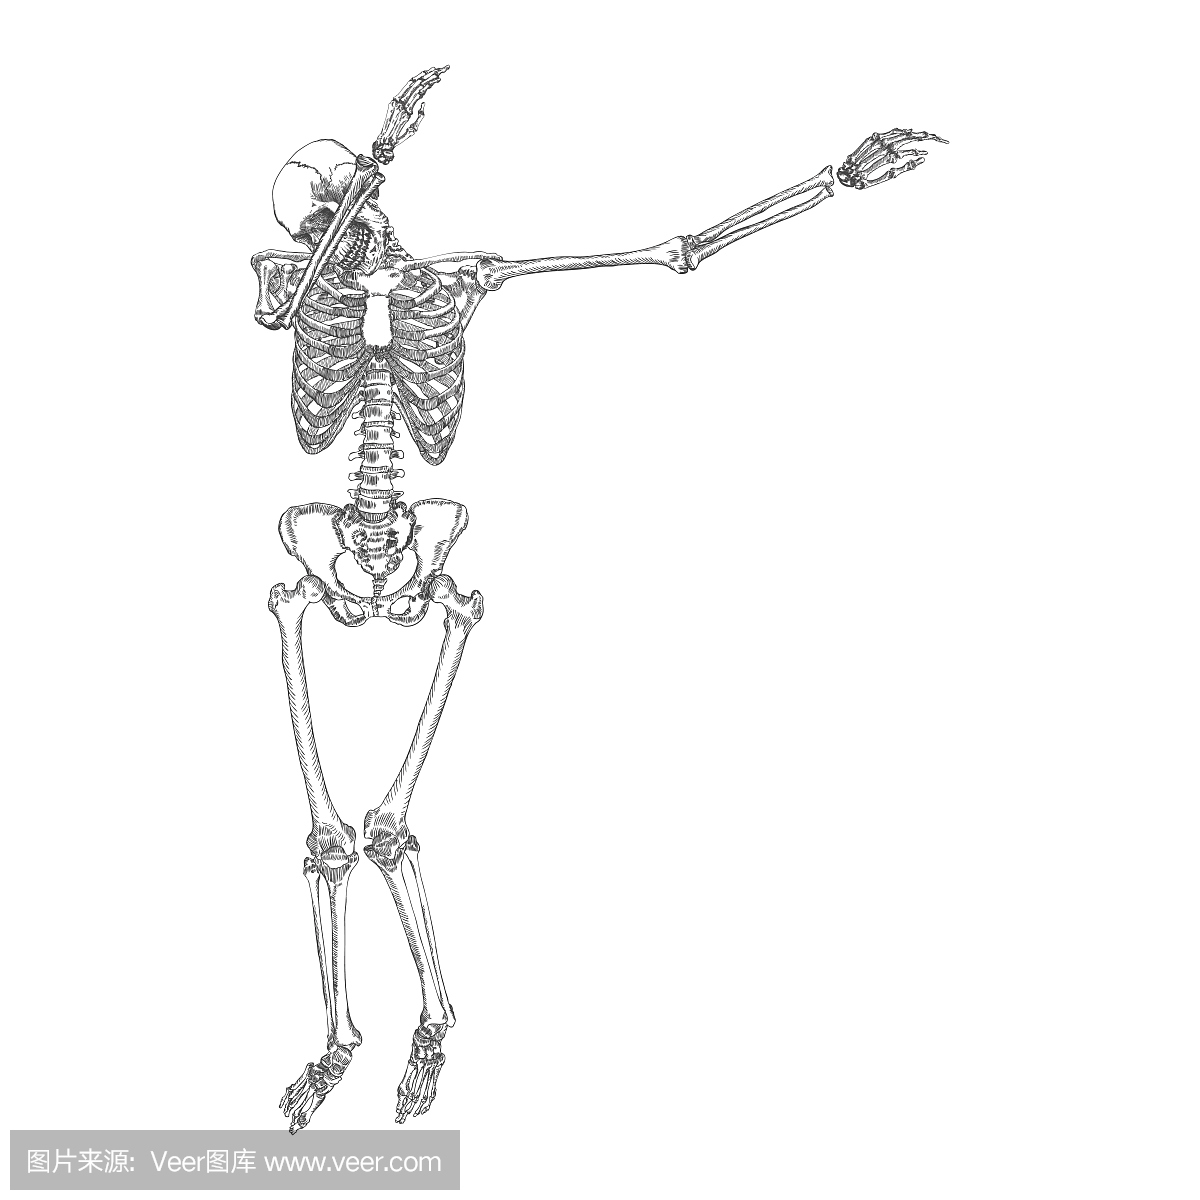 Human skeleton making DAB, perform dabbing